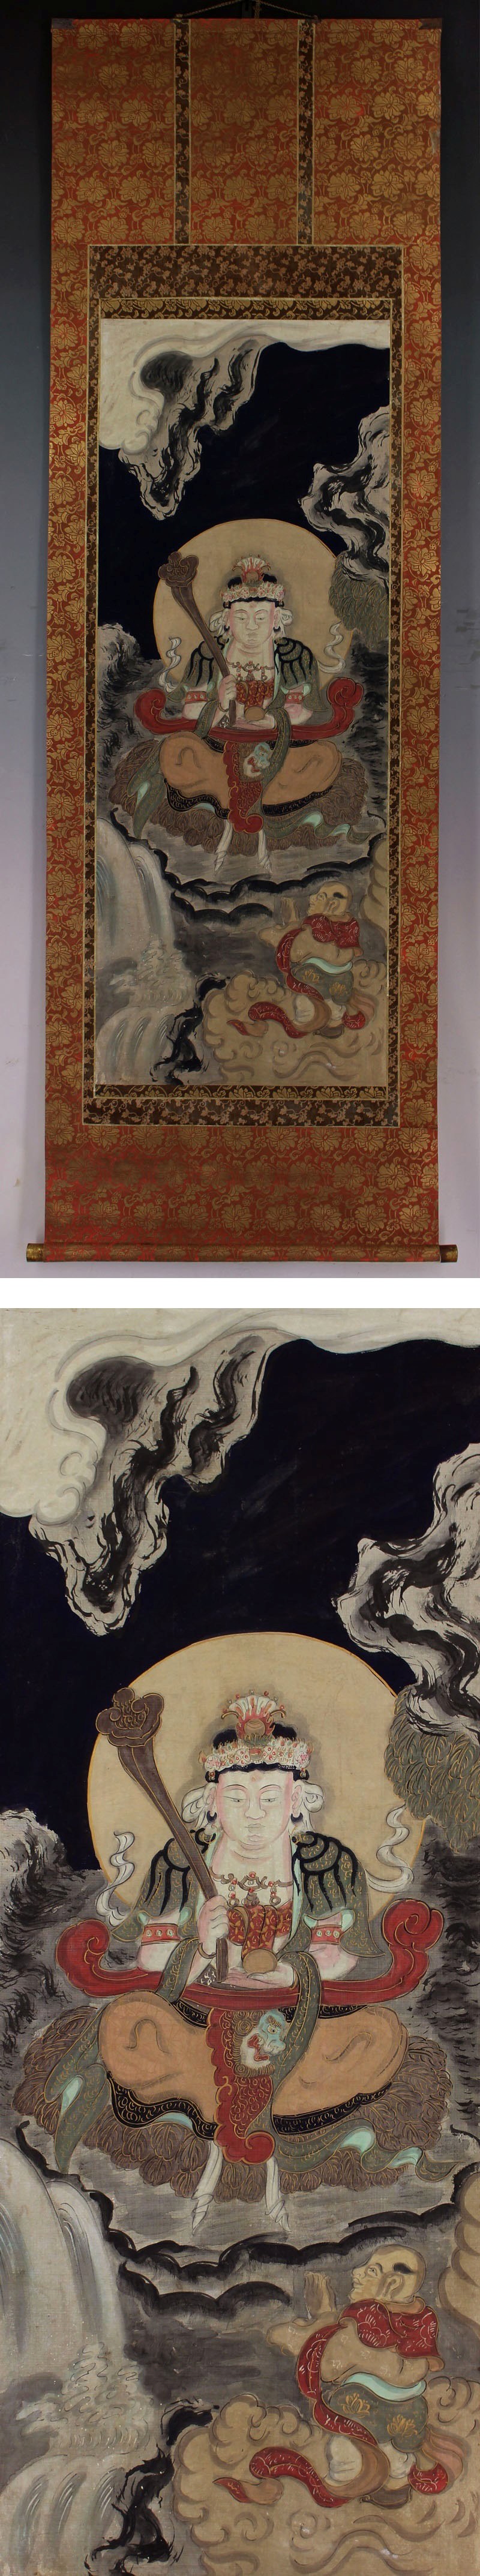 販売買古仏画◆絹本◆合箱◆掛軸　x05018 人物、菩薩